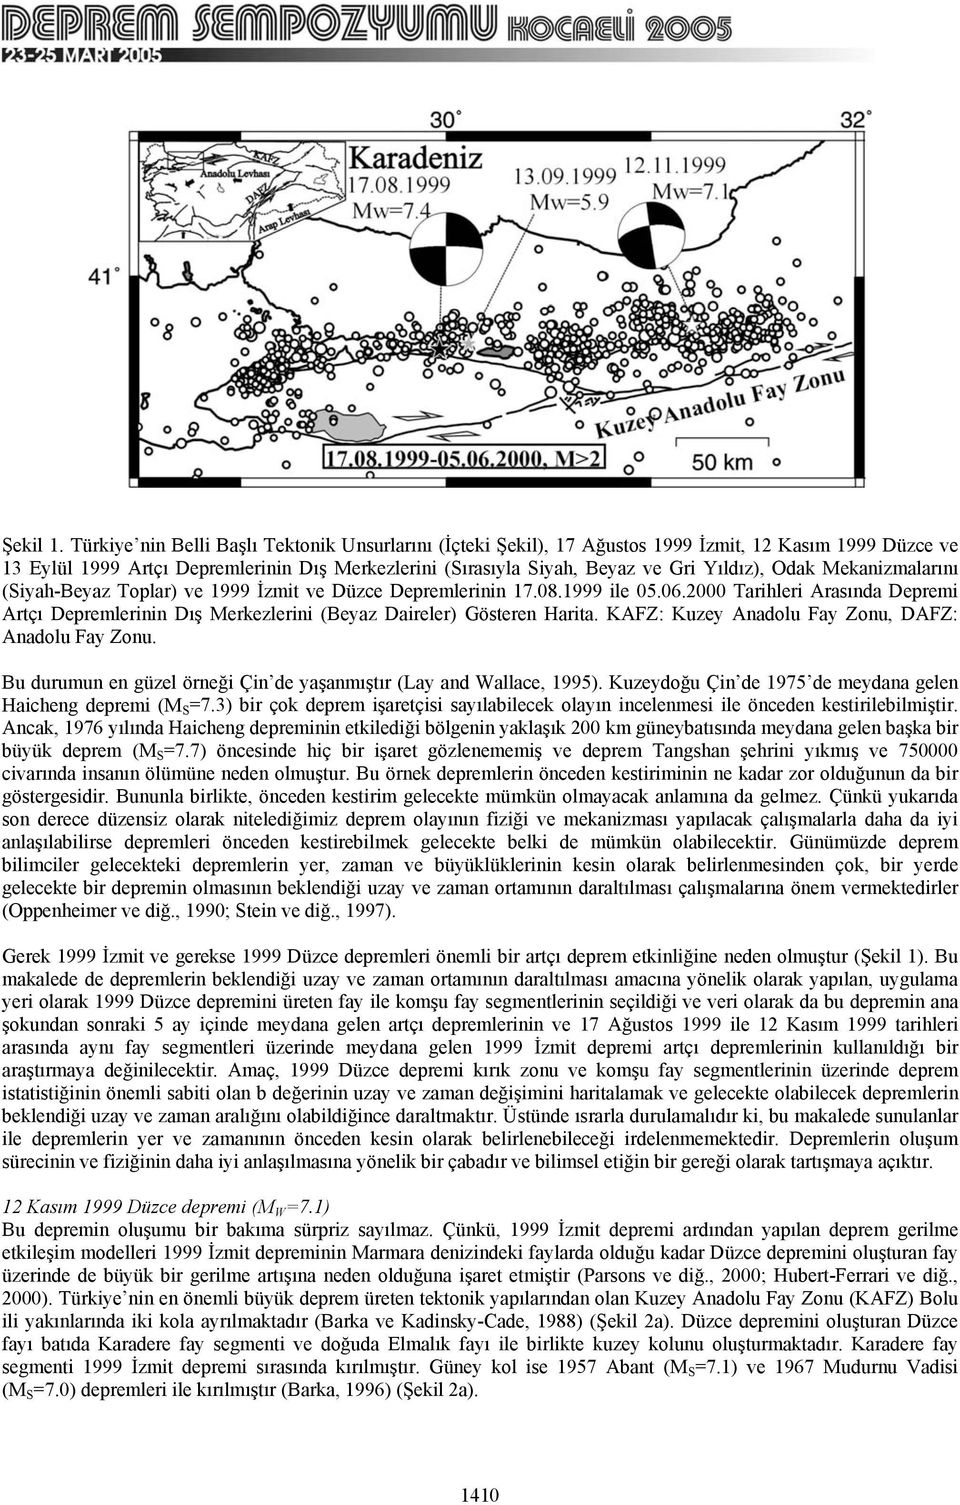 Odak Mekanizmalarını (Siyah-Beyaz Toplar) ve 1999 İzmit ve Düzce Depremlerinin 17.08.1999 ile 05.06.